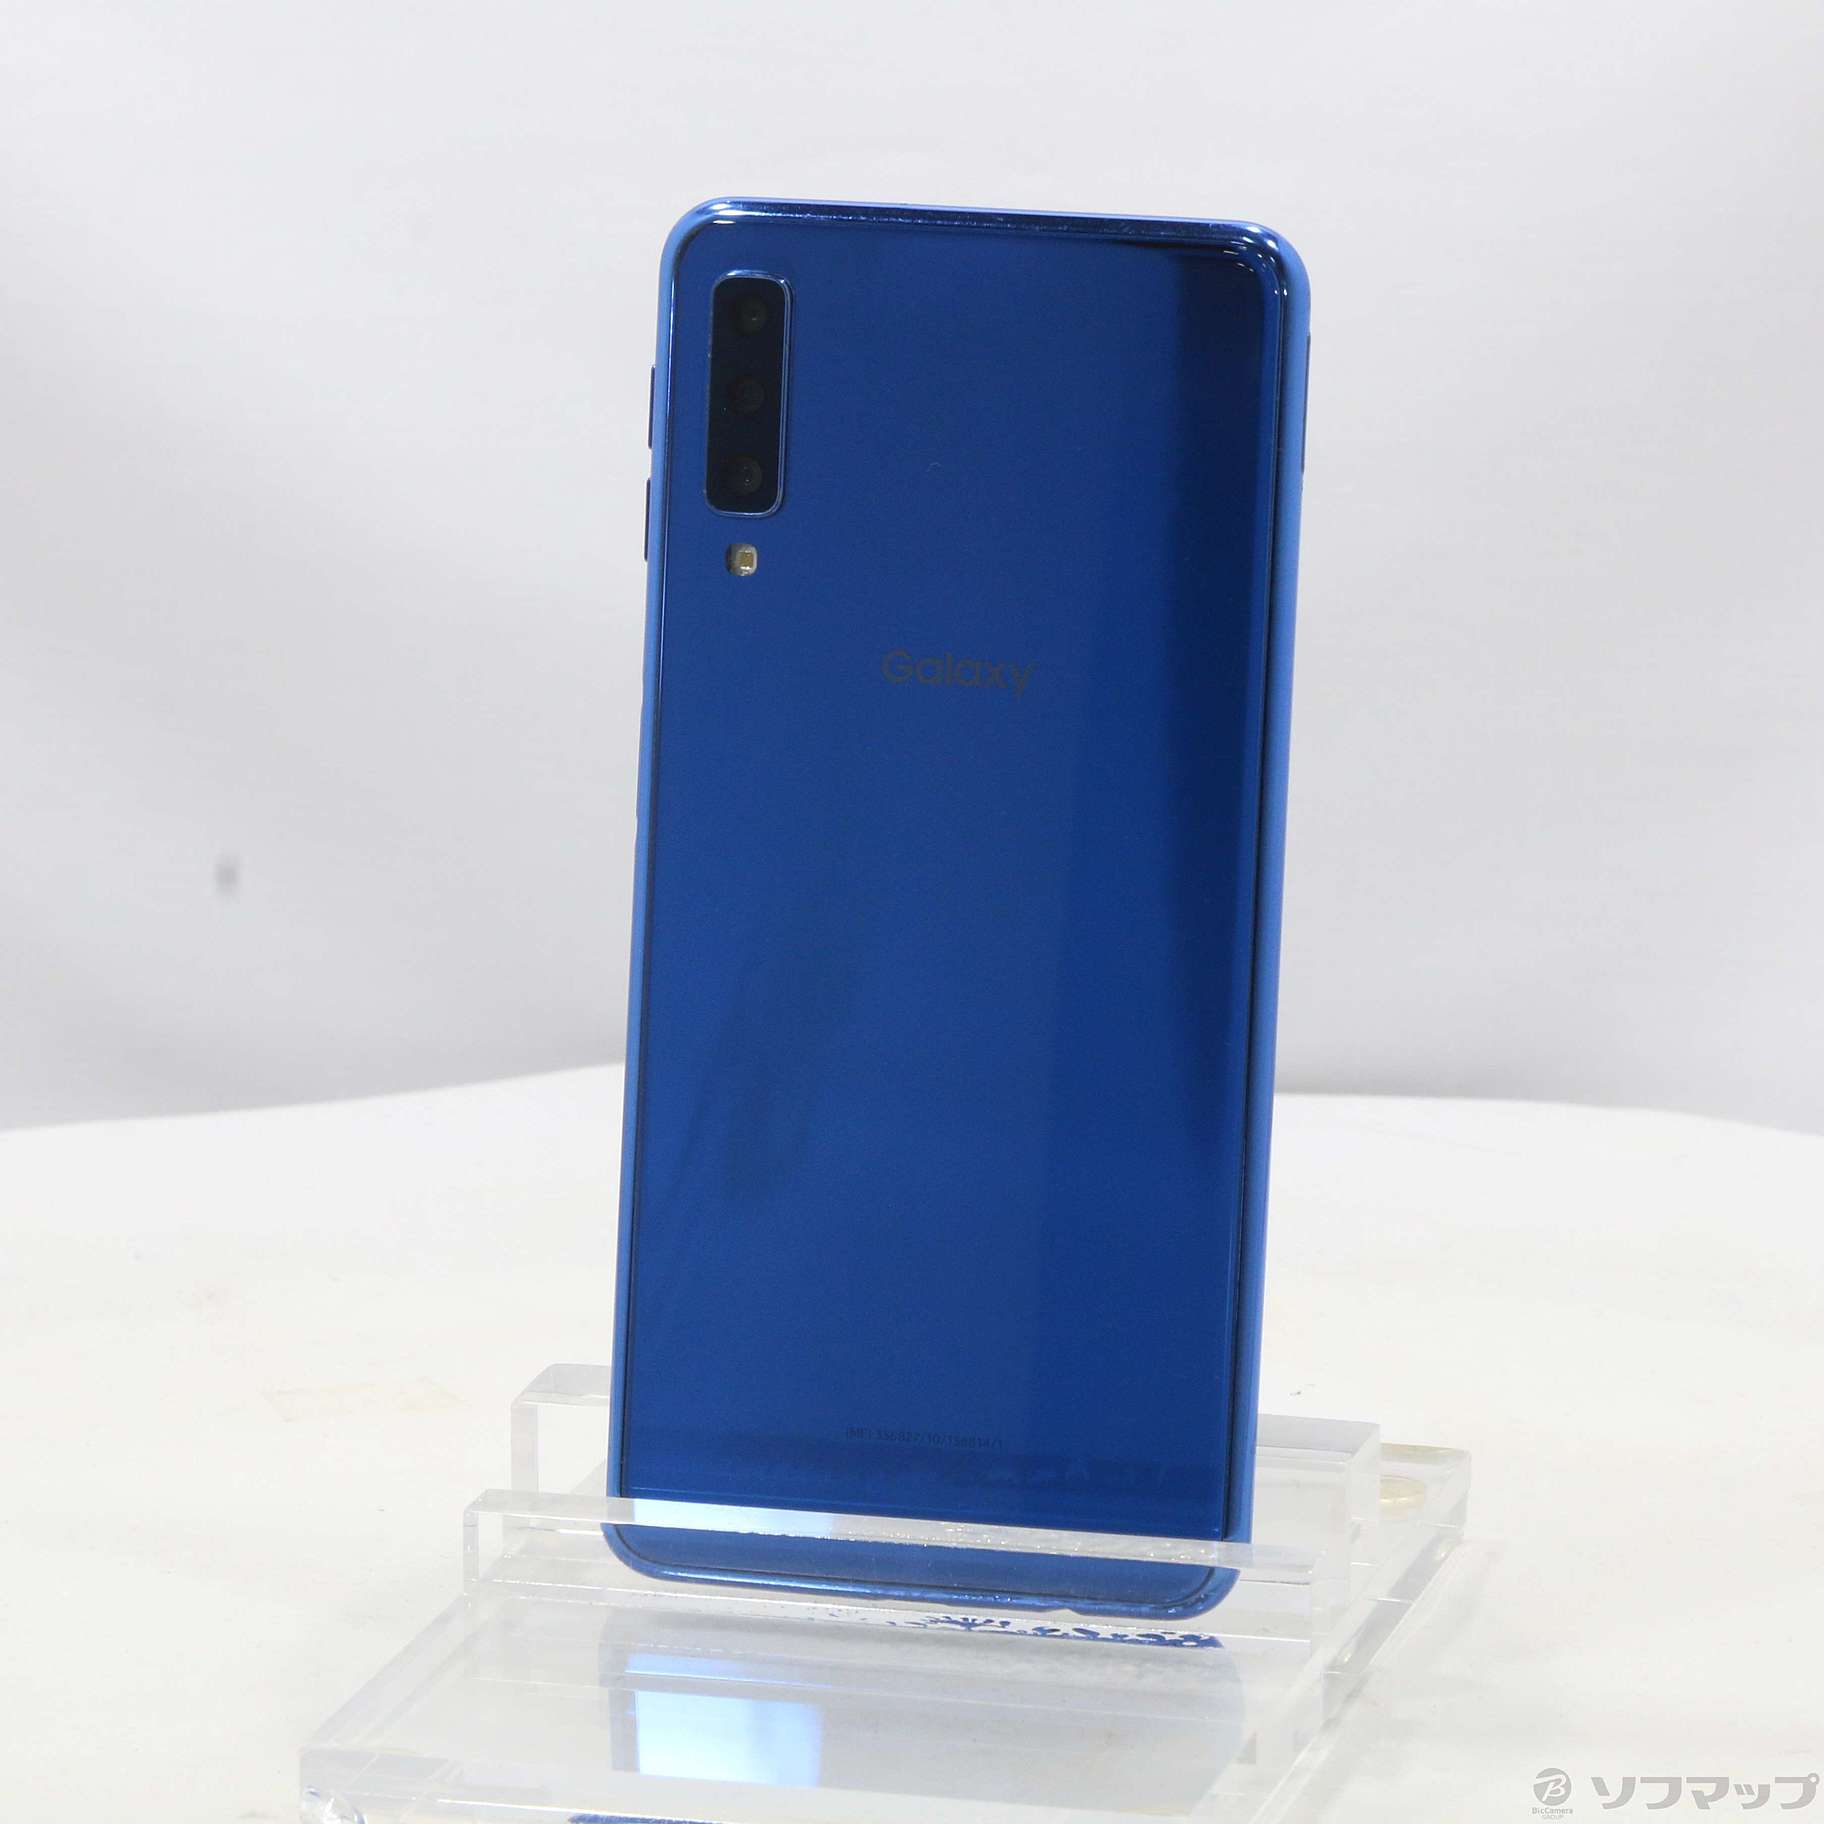 【即発送】Galaxy A7 ブルー 64GB  simフリー